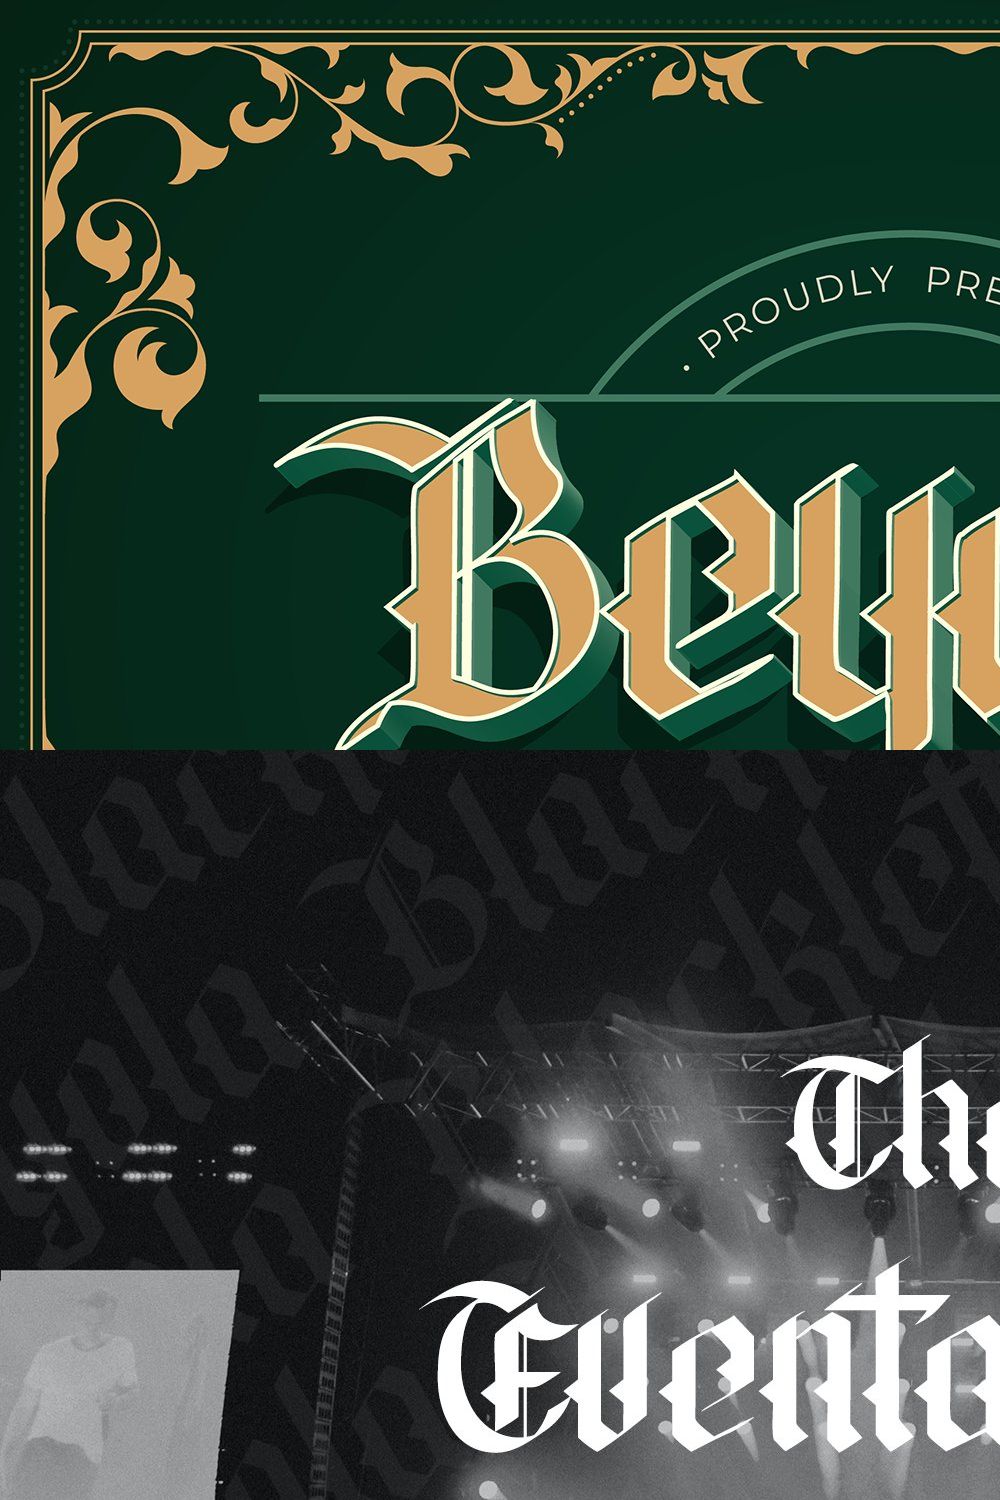 Beyola Blackletter Font pinterest preview image.